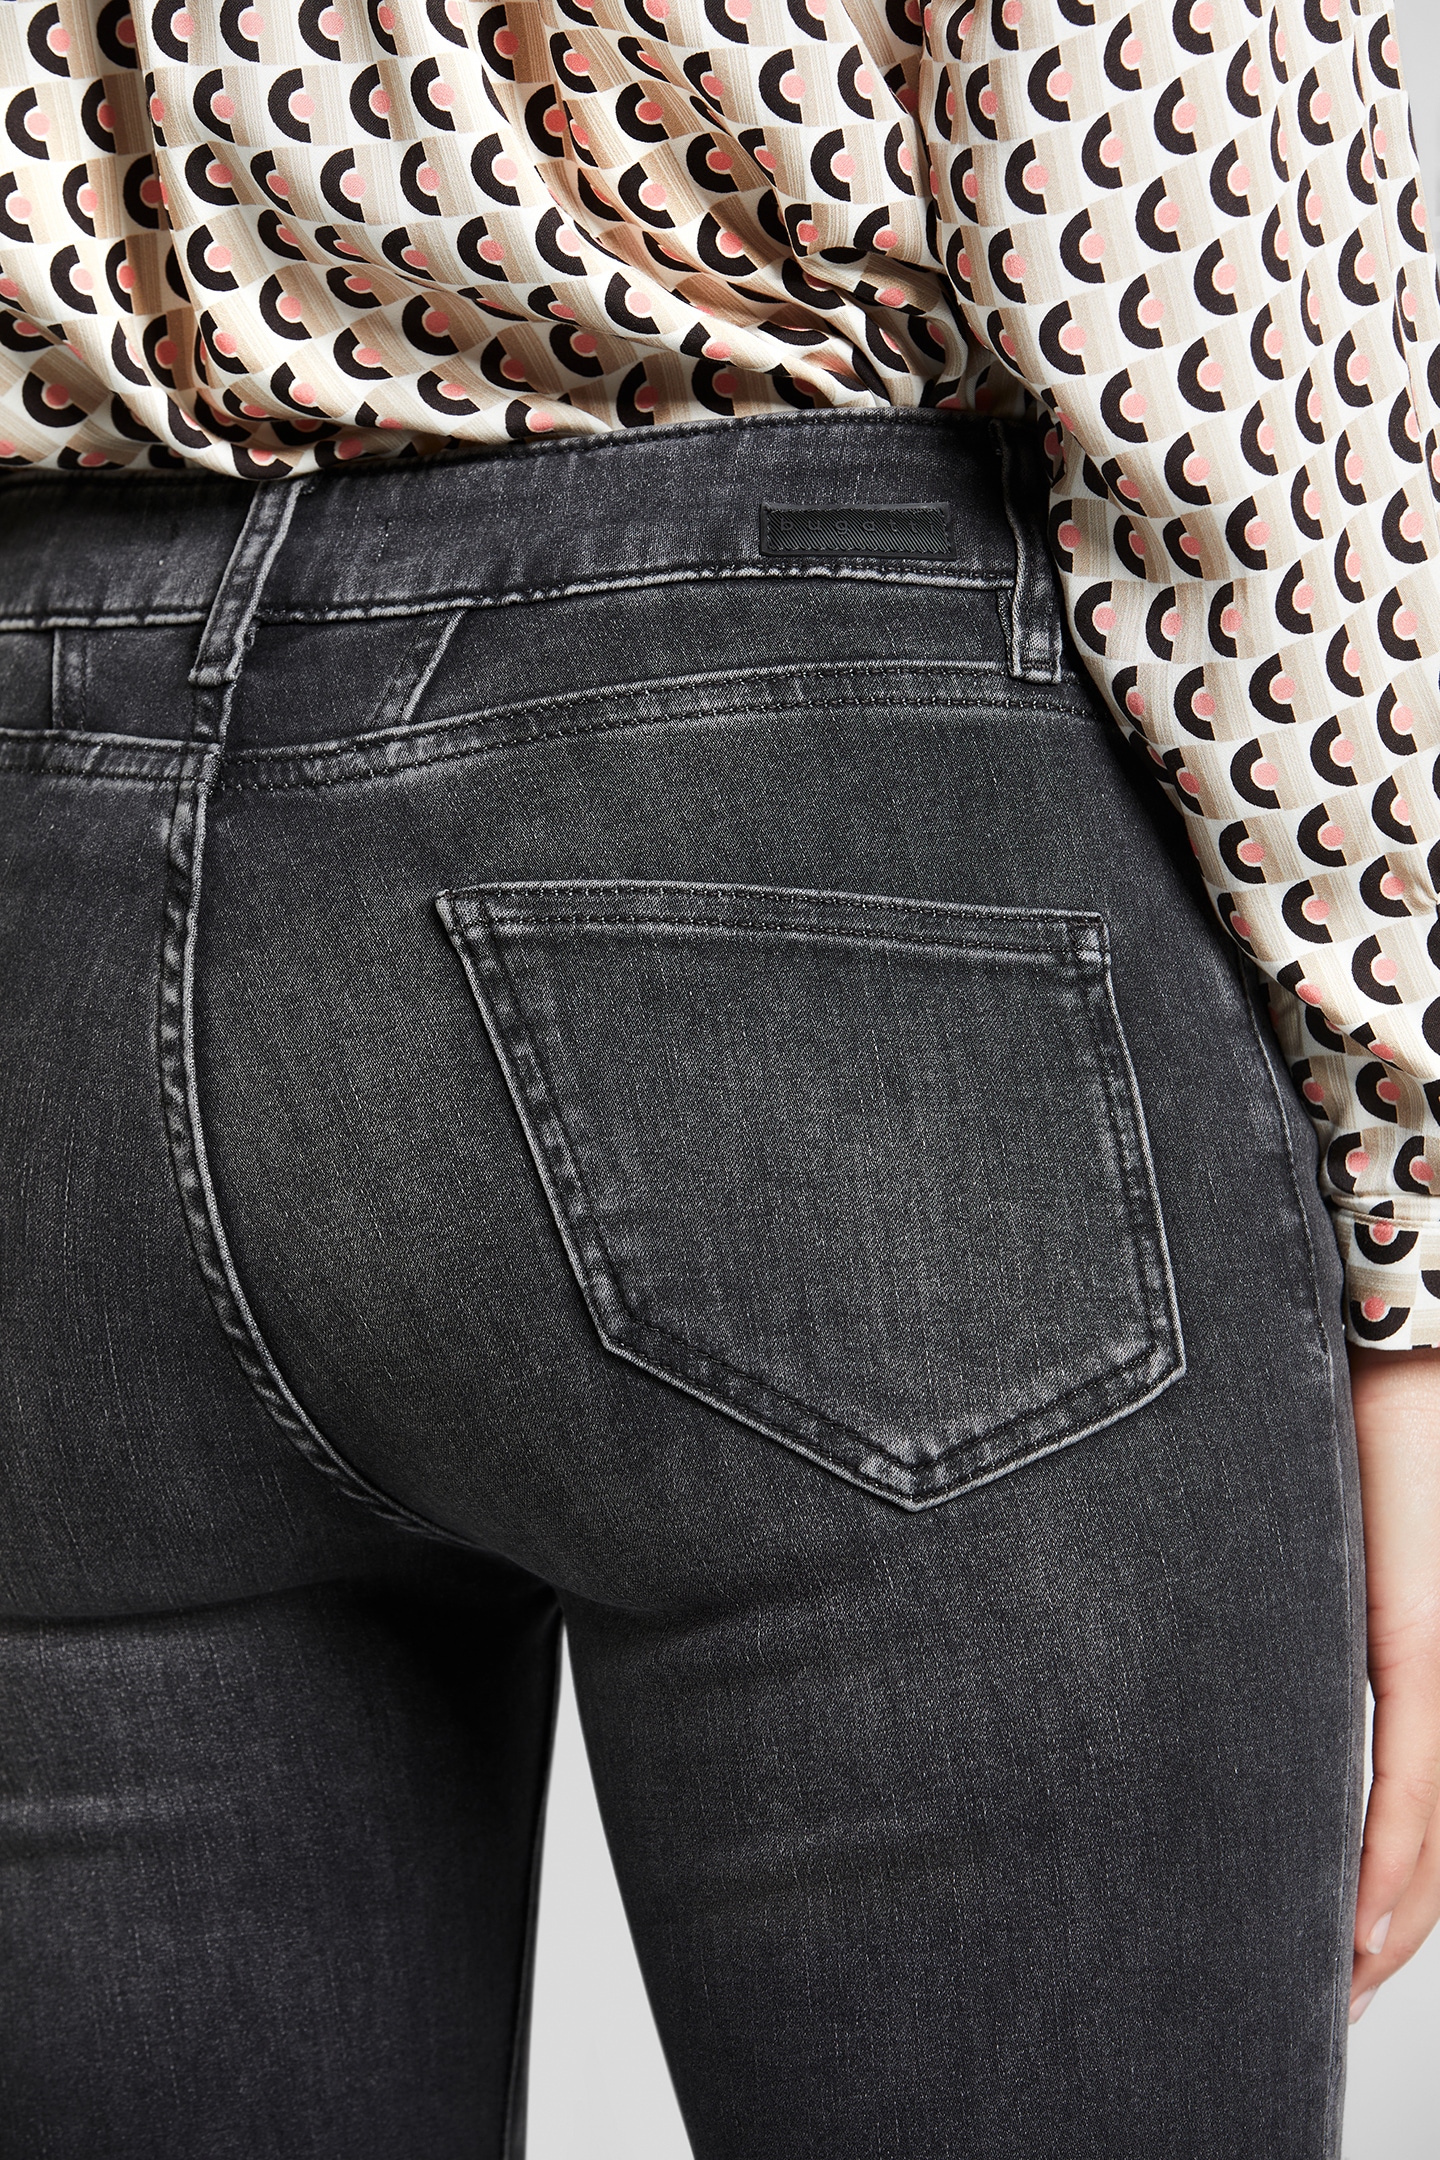 Used-Waschung ♕ bei 5-Pocket-Jeans, leichte bugatti